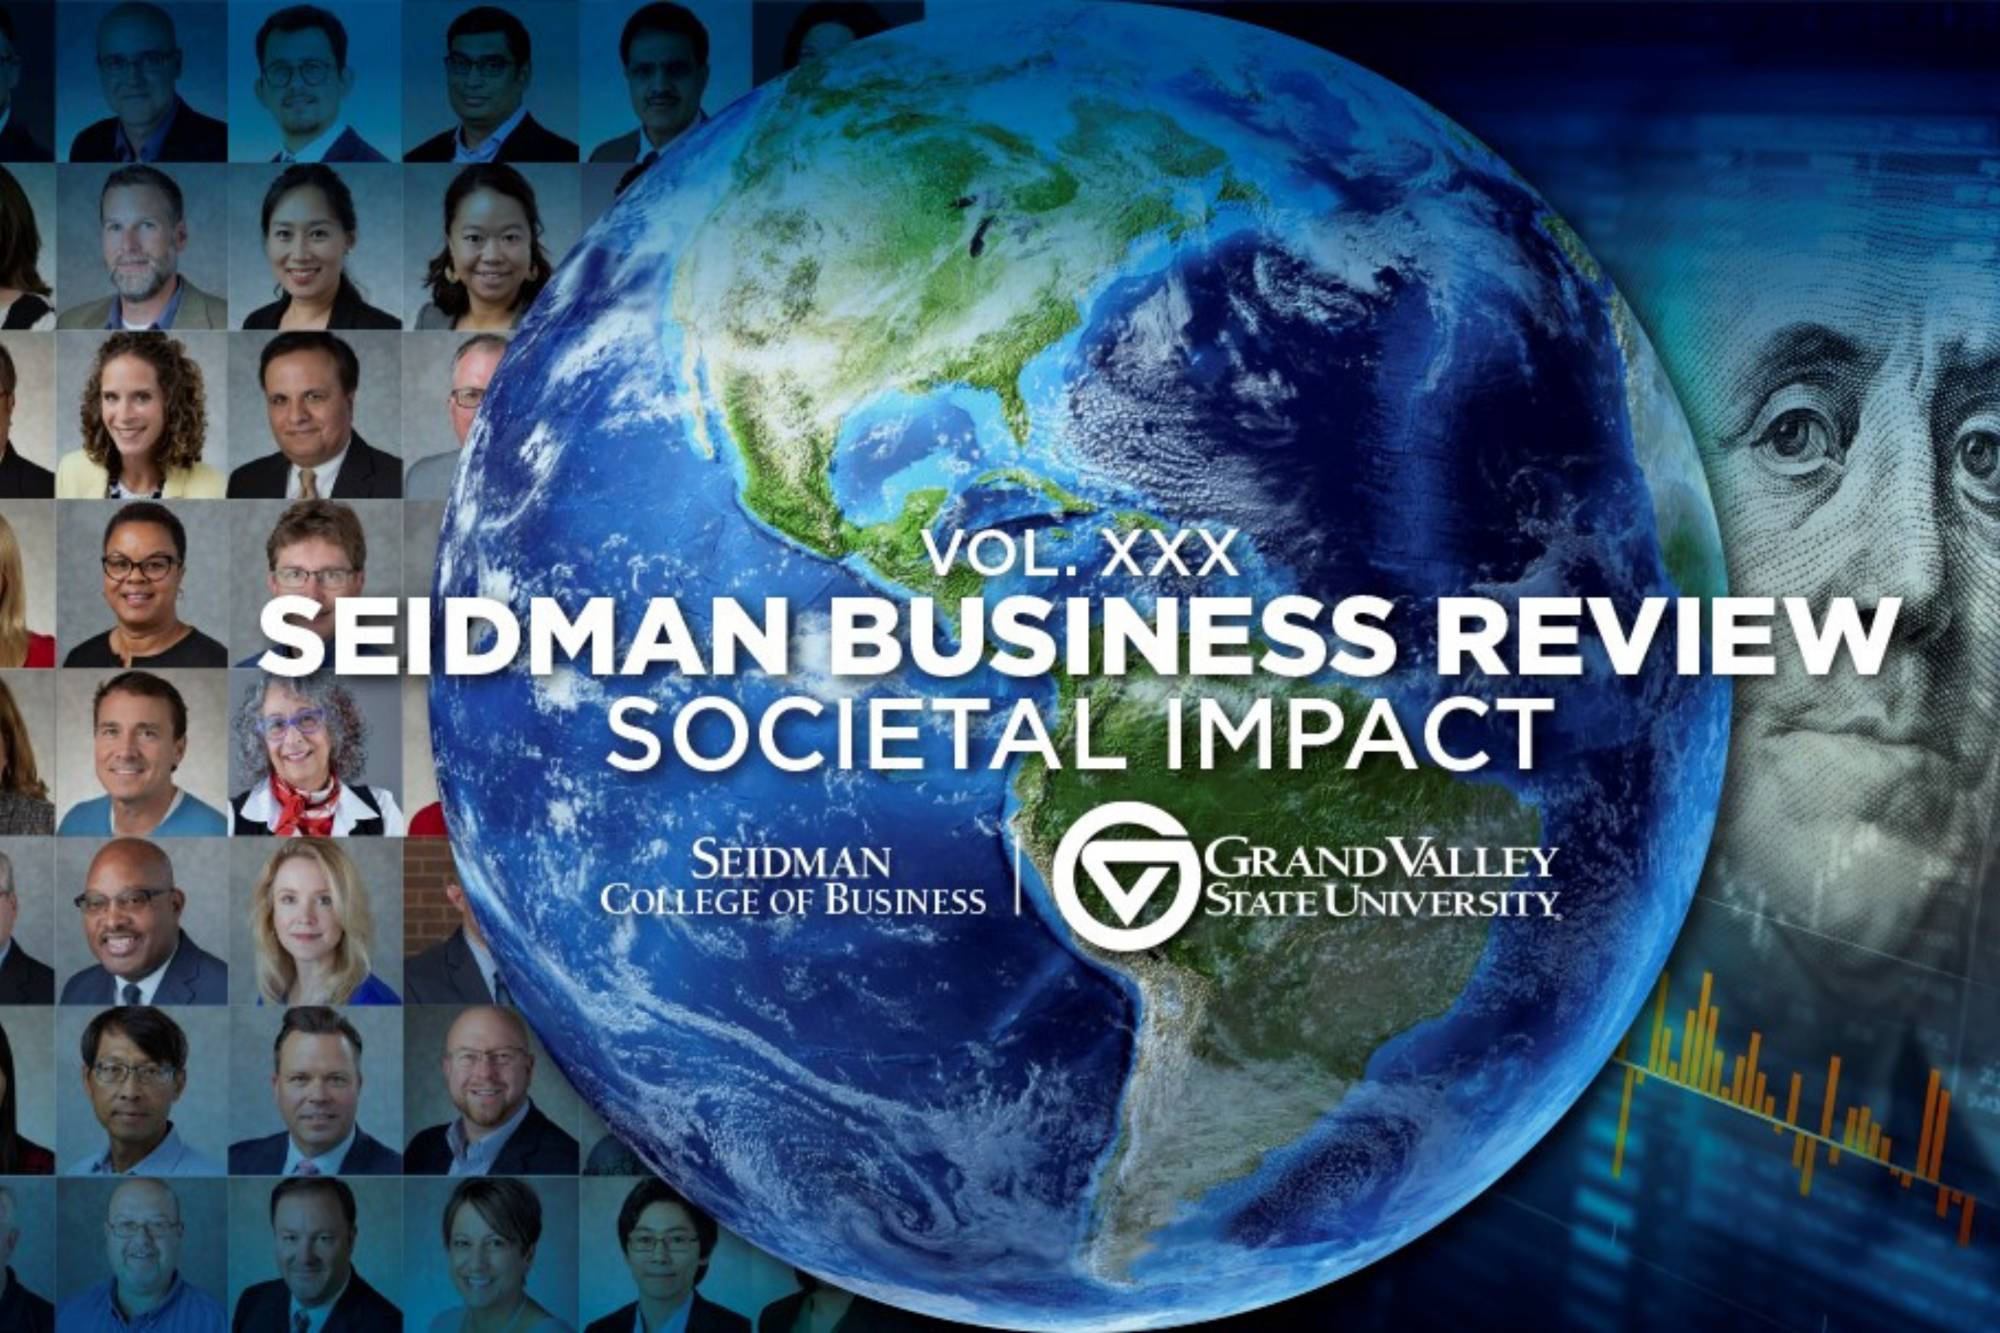 seidman business review societal impact publication cover